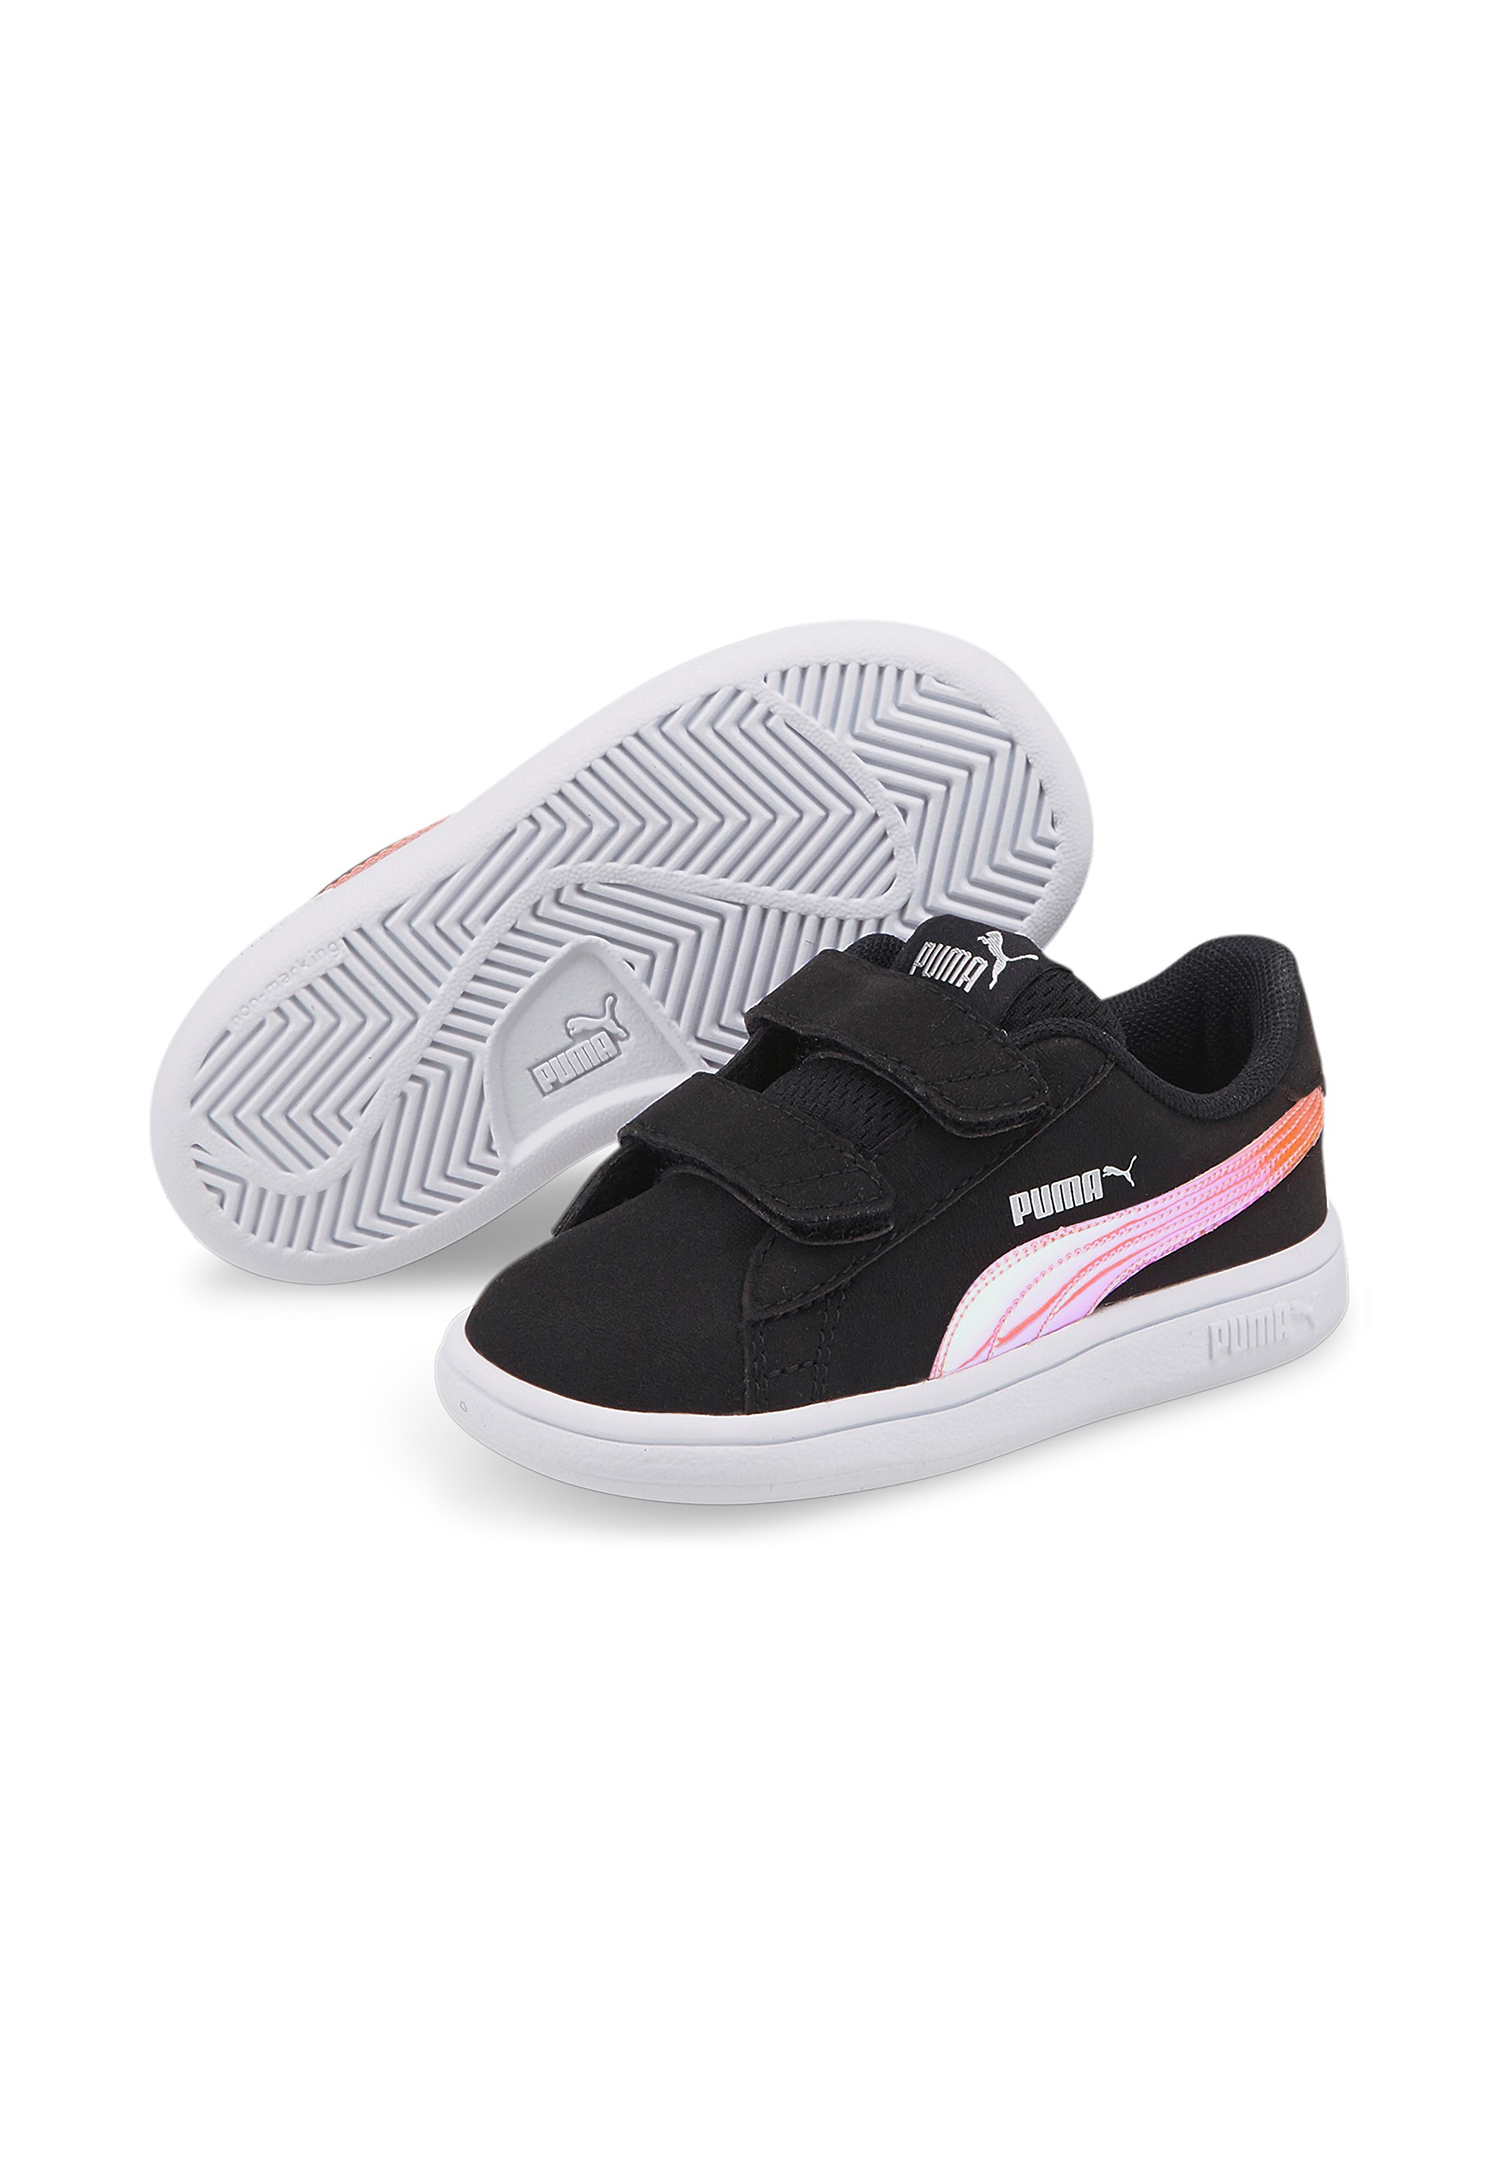 PUMA Smash v2 HOLO V INF Kids Sneaker Schuhe schwarz 385576 02